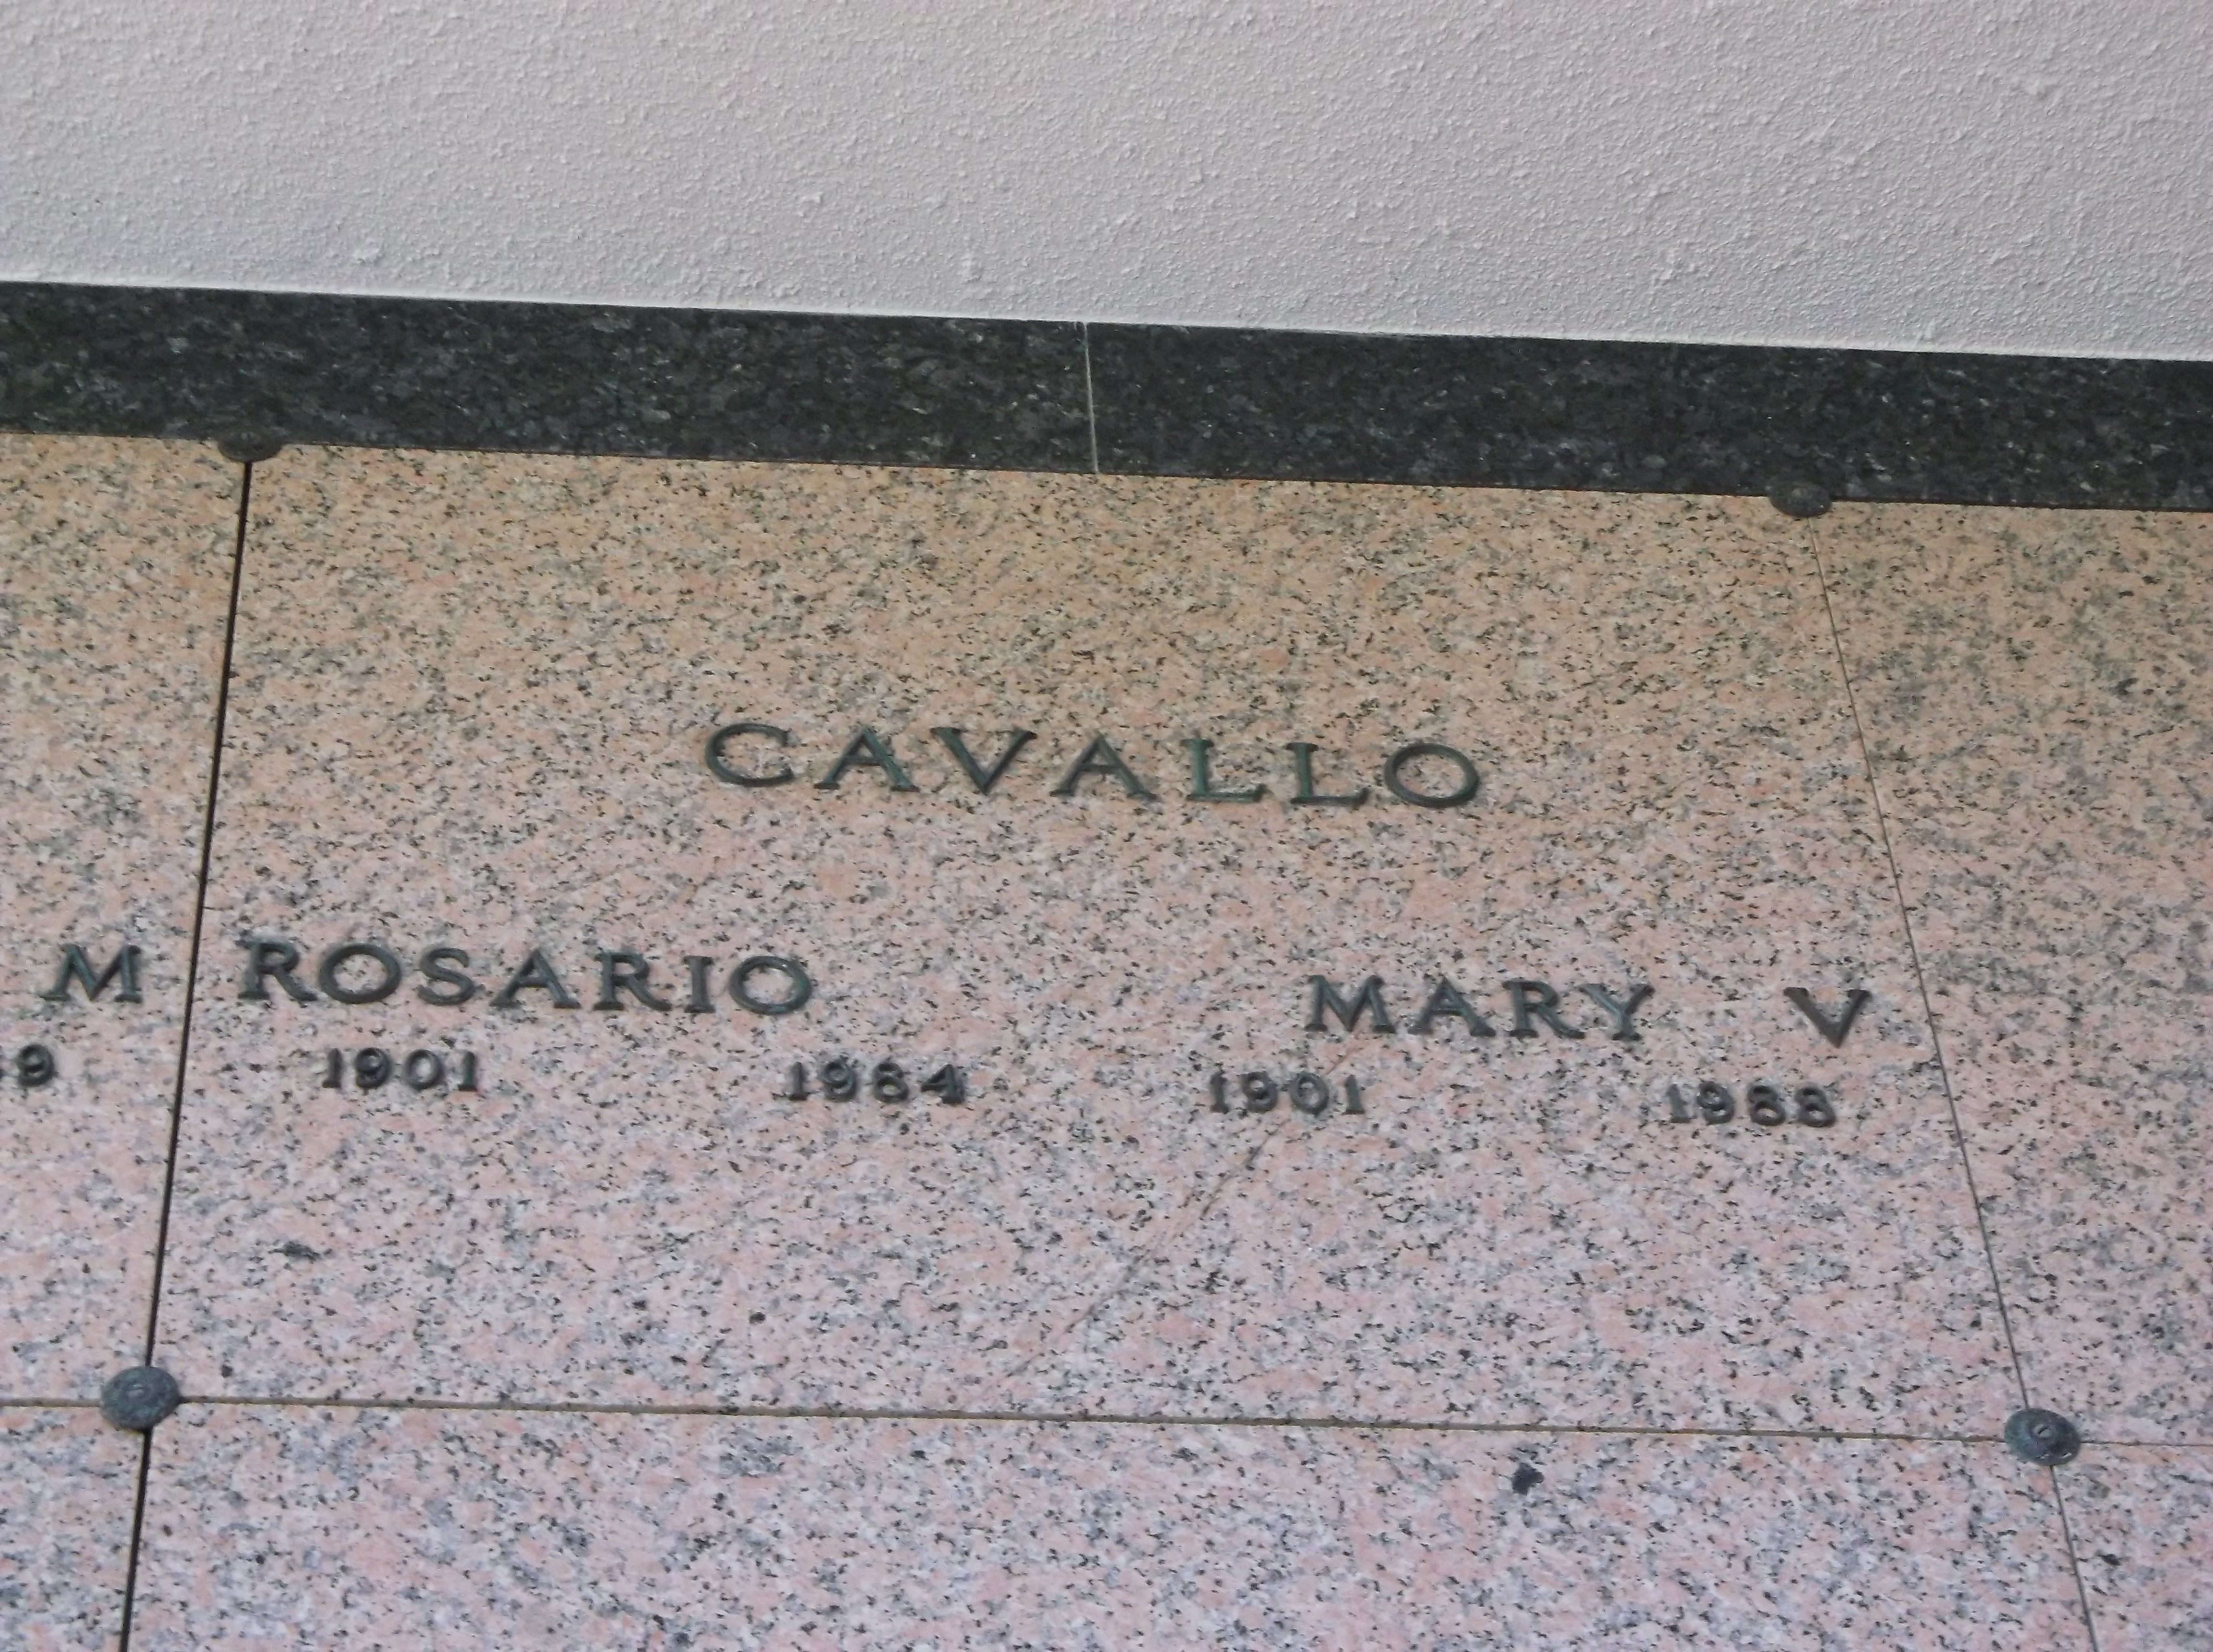 Mary V Cavallo